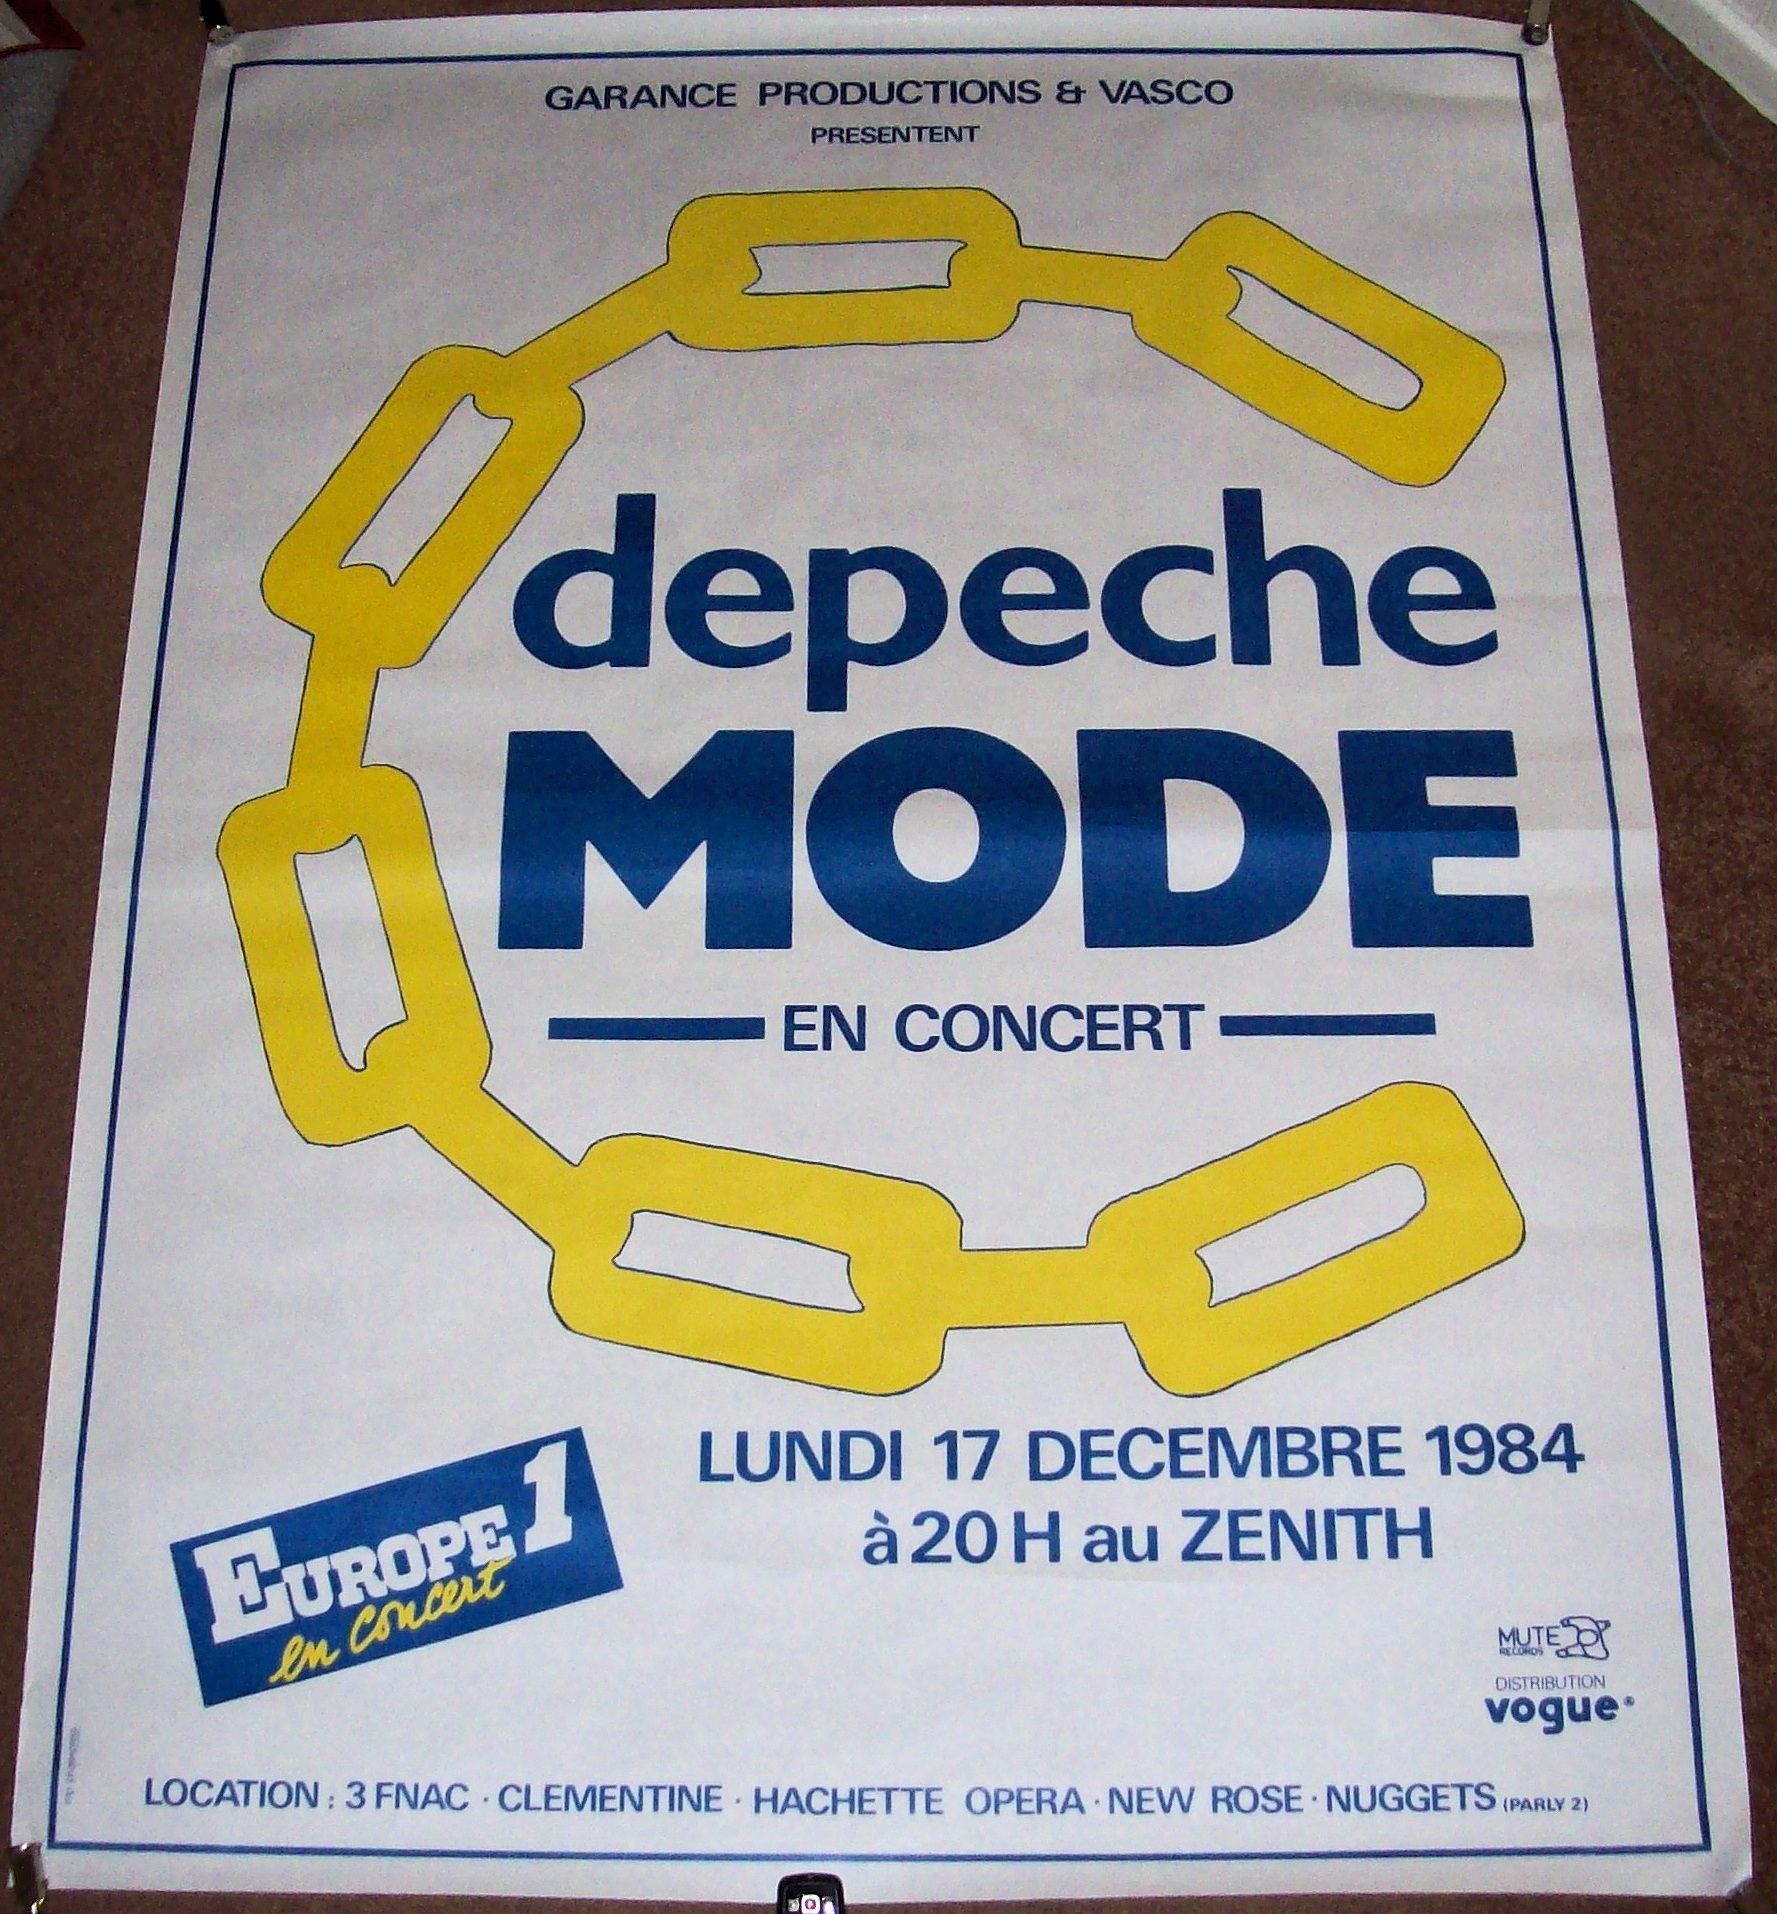 DEPECHE MODE CONCERT POSTER MONDAY 17th DECEMBER 1984 ZENITH THEATER PARIS 